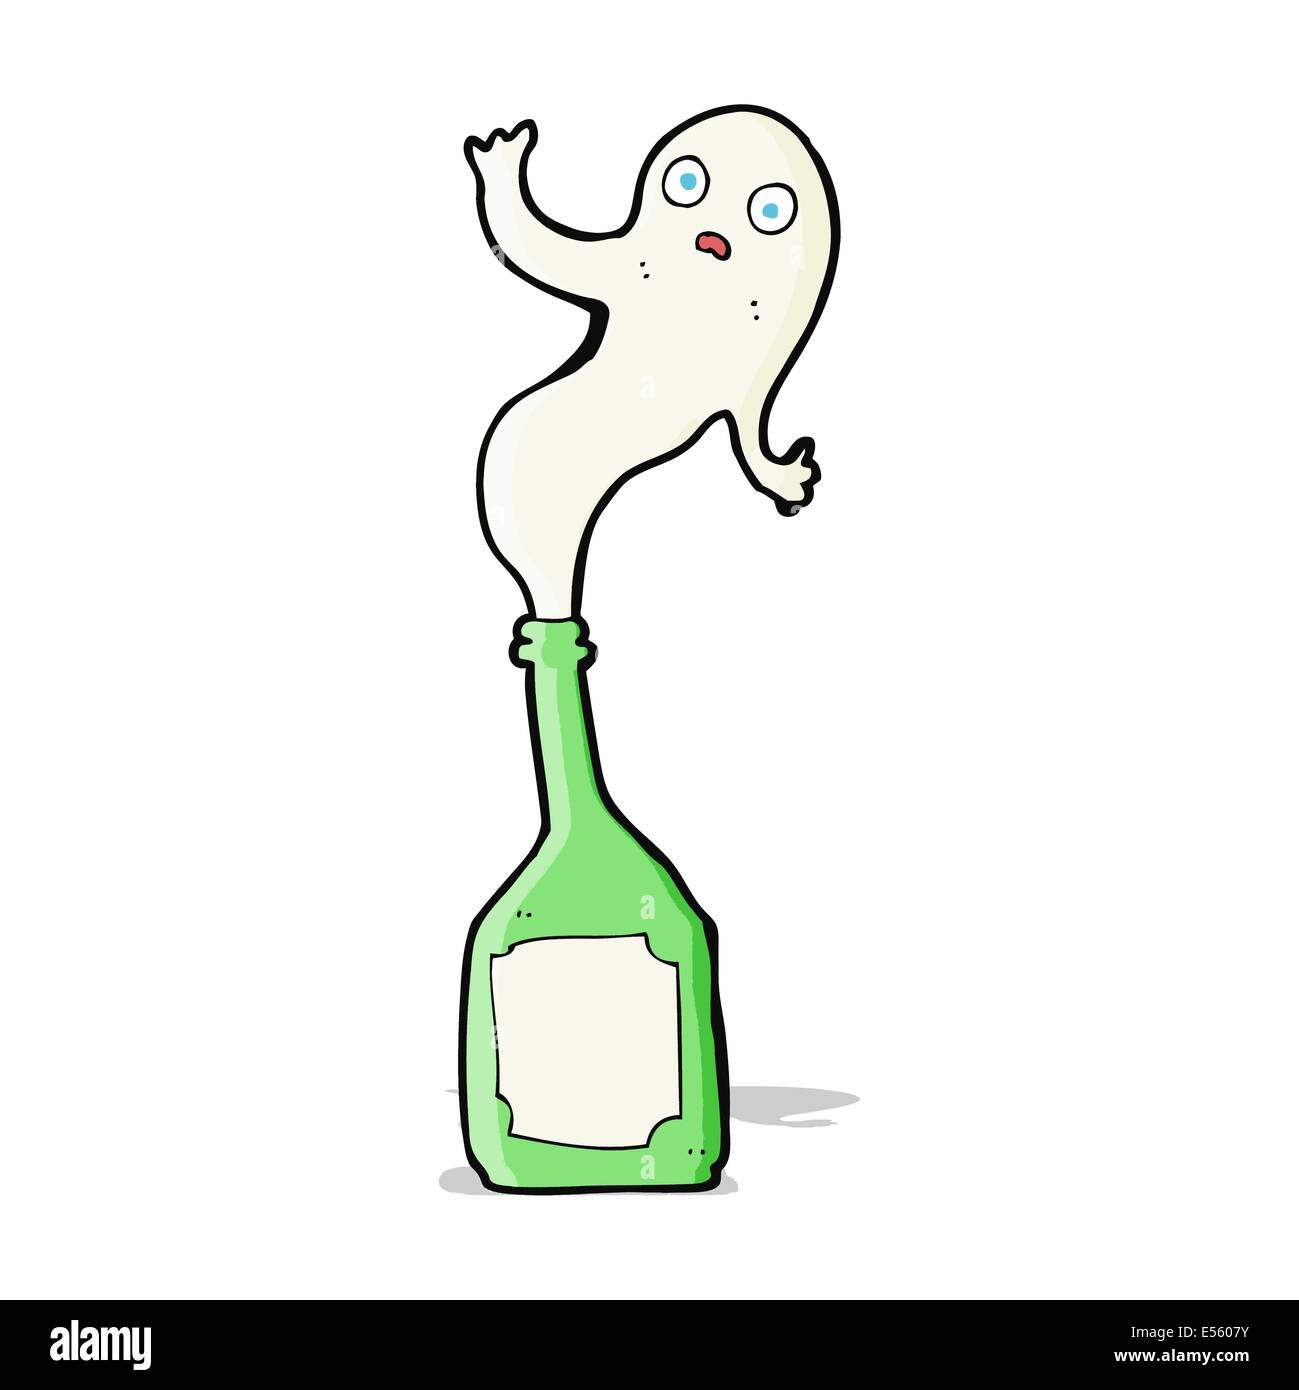 Cartoon-Geist in der Flasche Stock-Vektorgrafik - Alamy